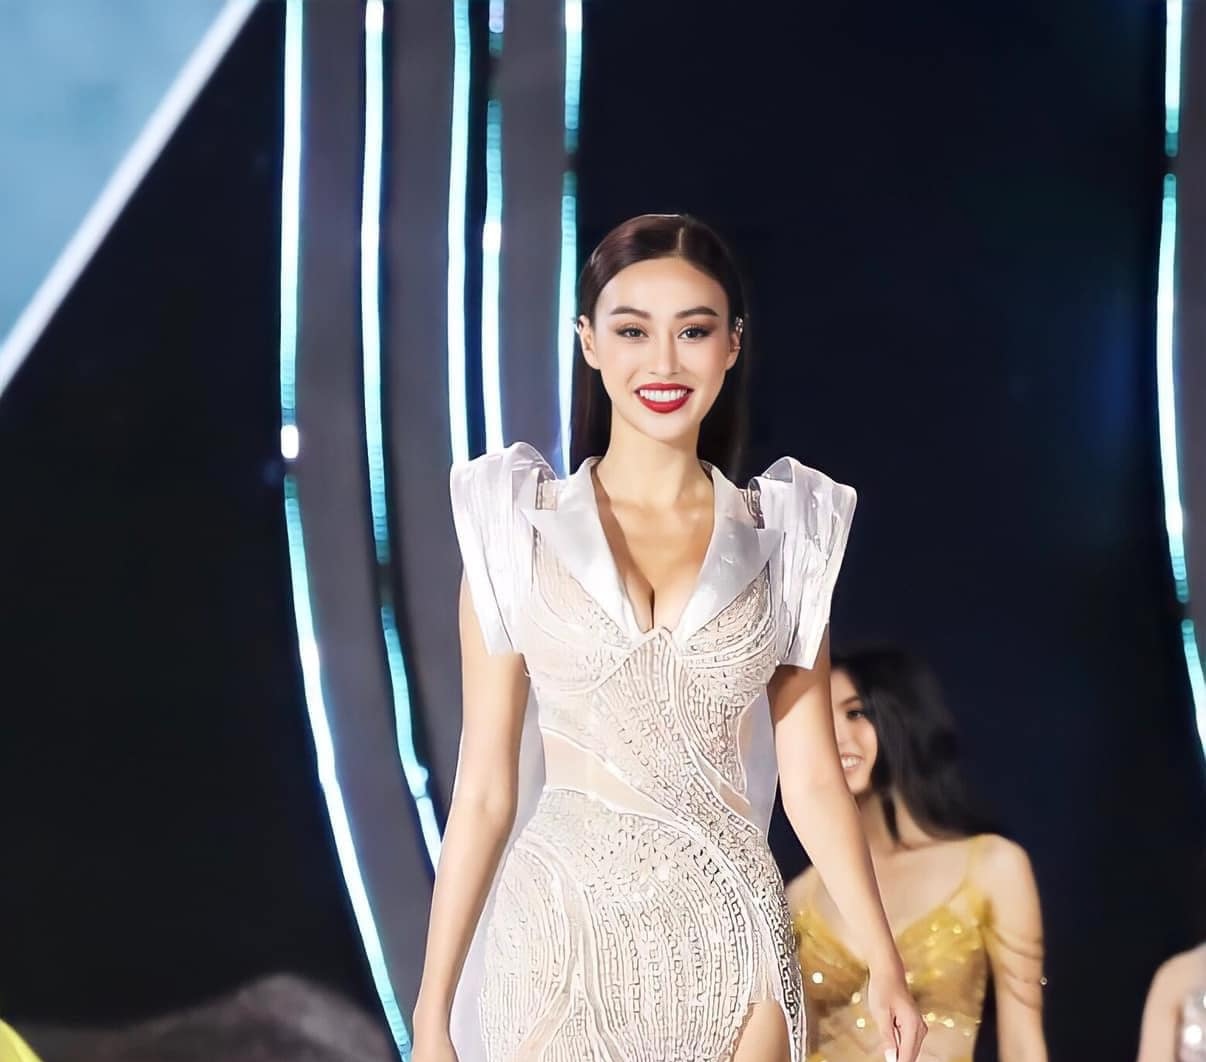 Á hậu 2 Hoa hậu Hoà bình Việt Nam 2022 gợi cảm vượt bậc nhờ vòng 1 “khổng lồ”? - ảnh 3